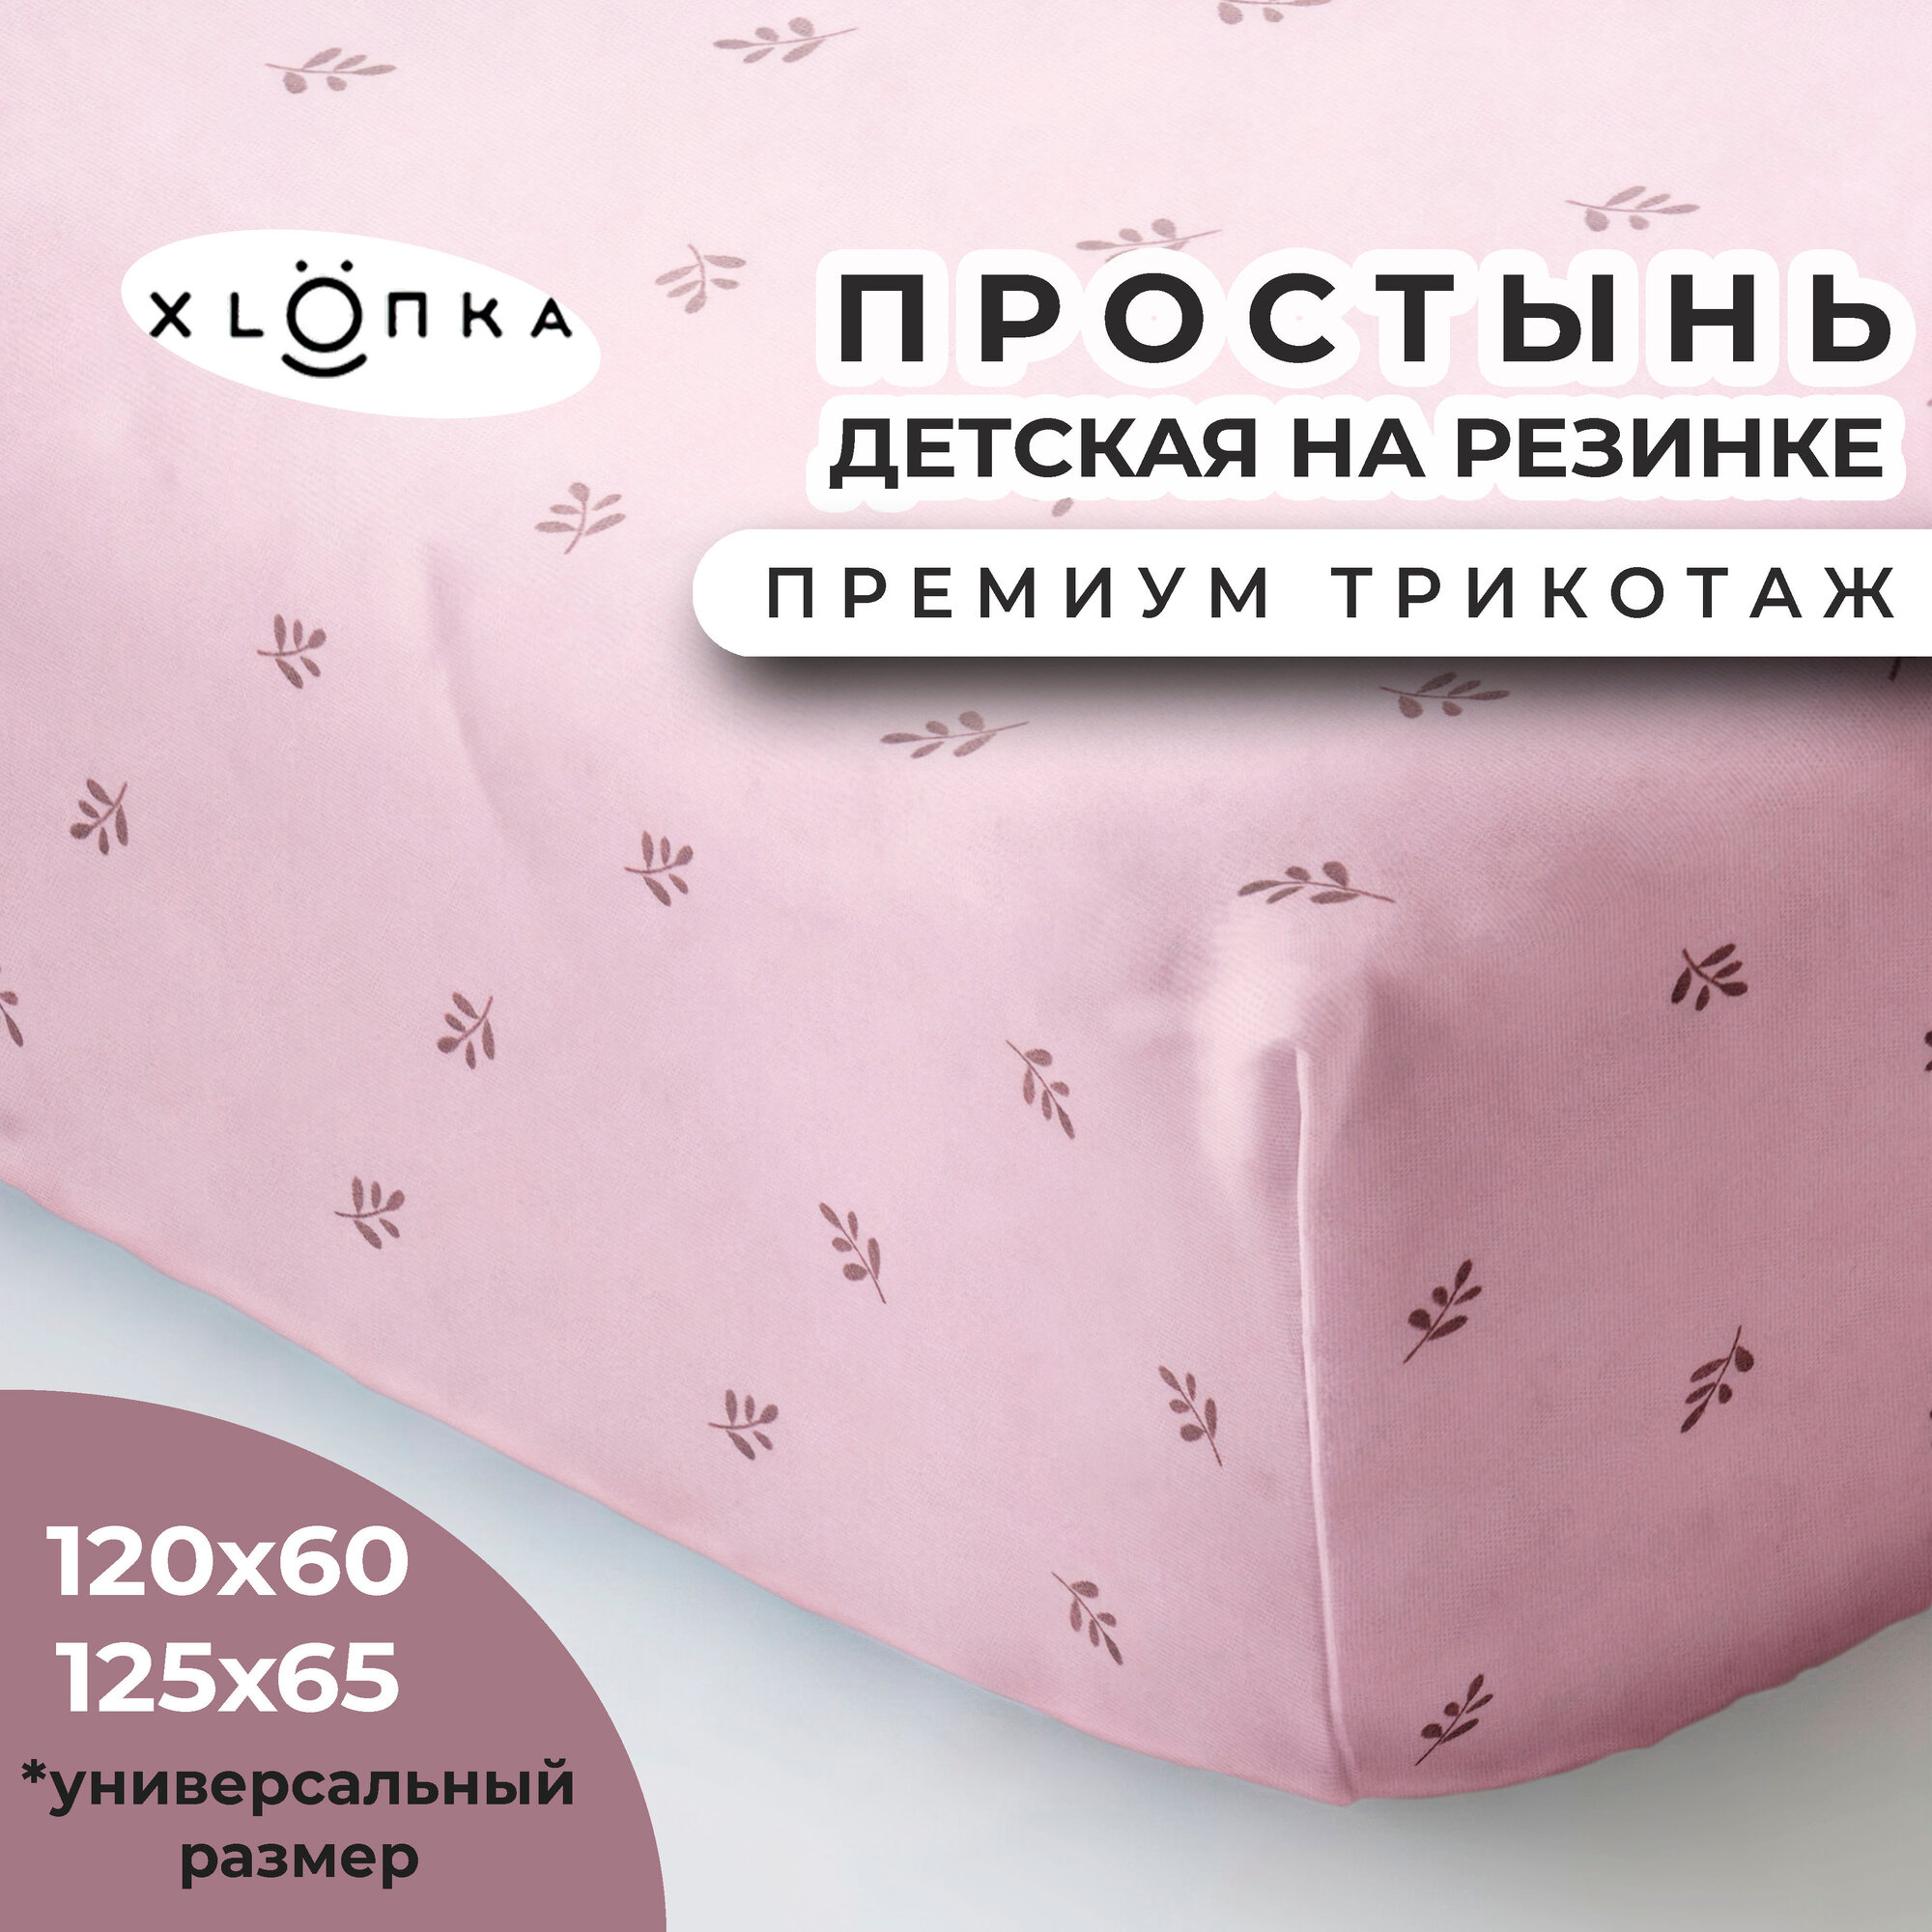 Простыня на резинке детская 120х60, из 100 % хлопка , XLOПka